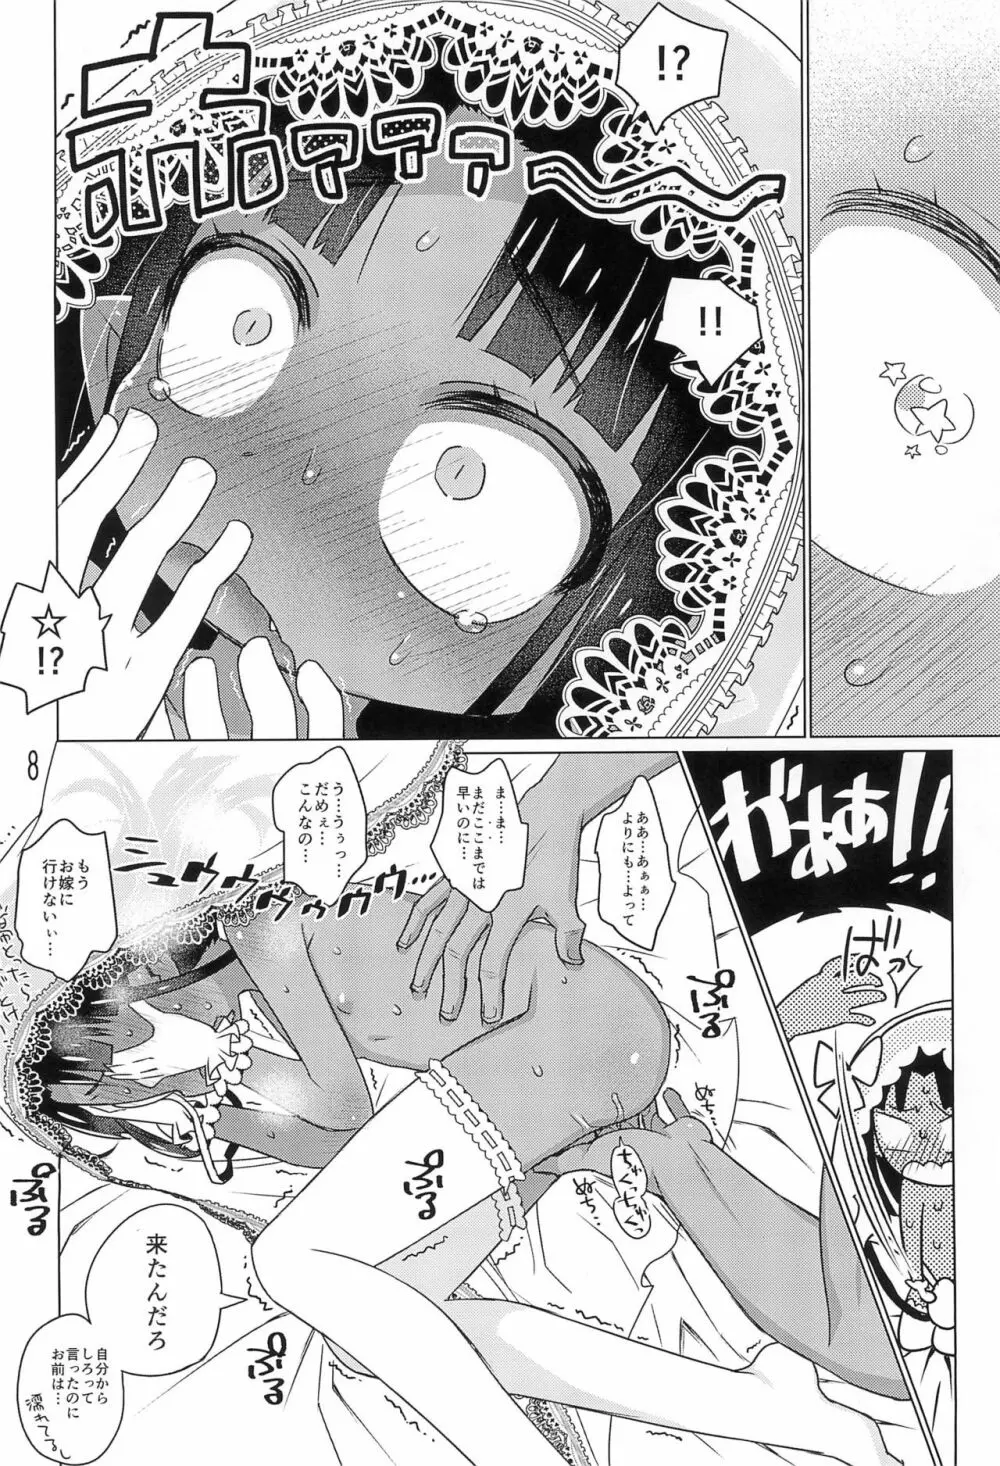 DakimakuraのOmake 8ページ